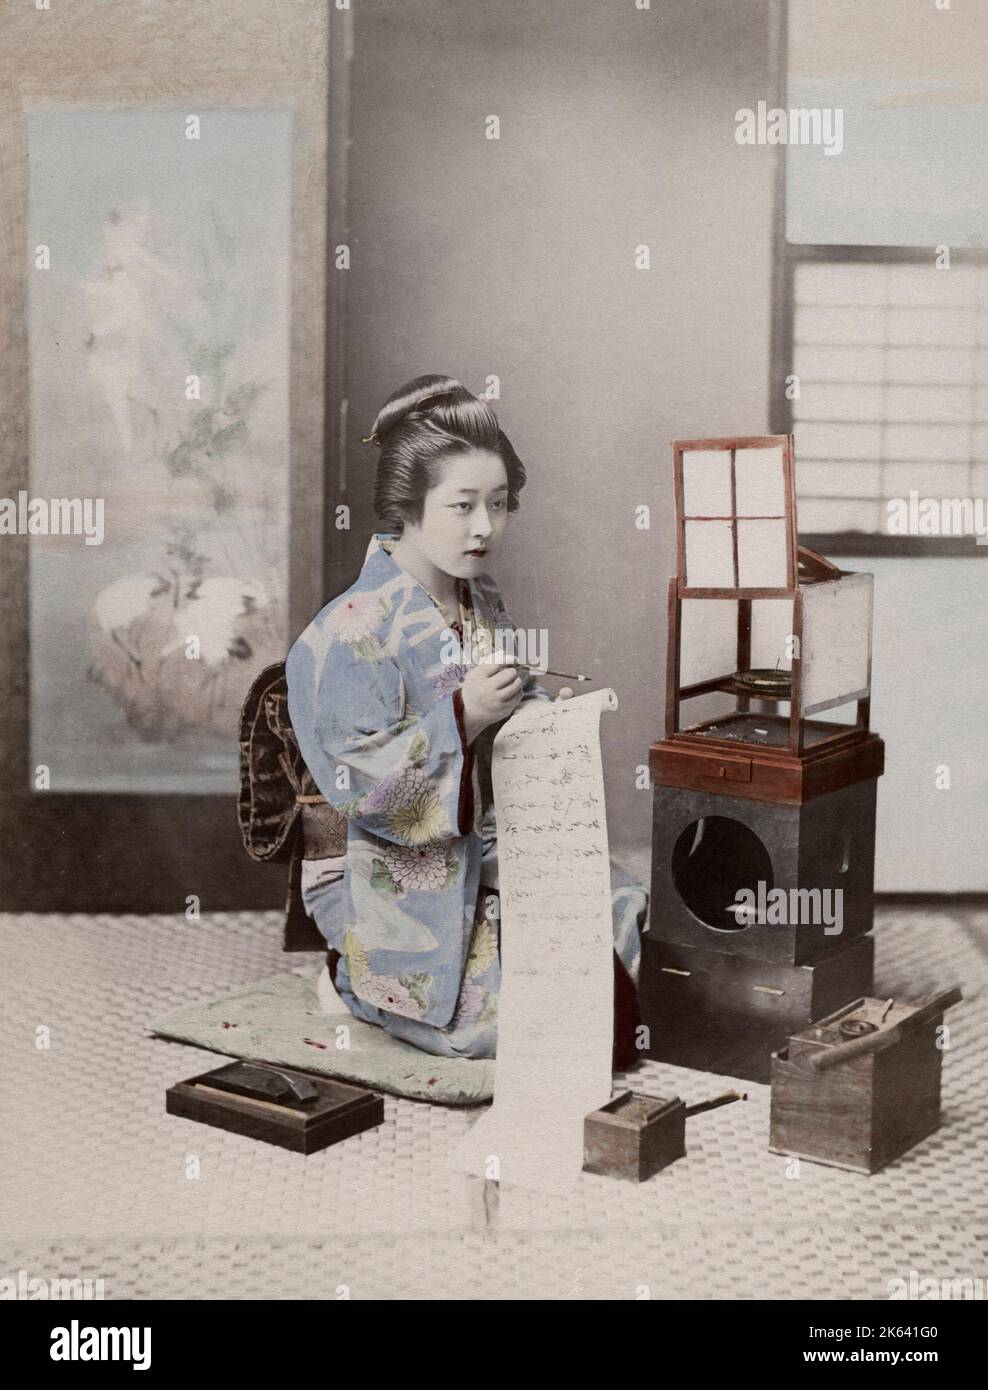 Japanische Geisha in einem verzierten Kimono, die einen Brief schreibt. Vintage 19. Jahrhundert Foto. Stockfoto